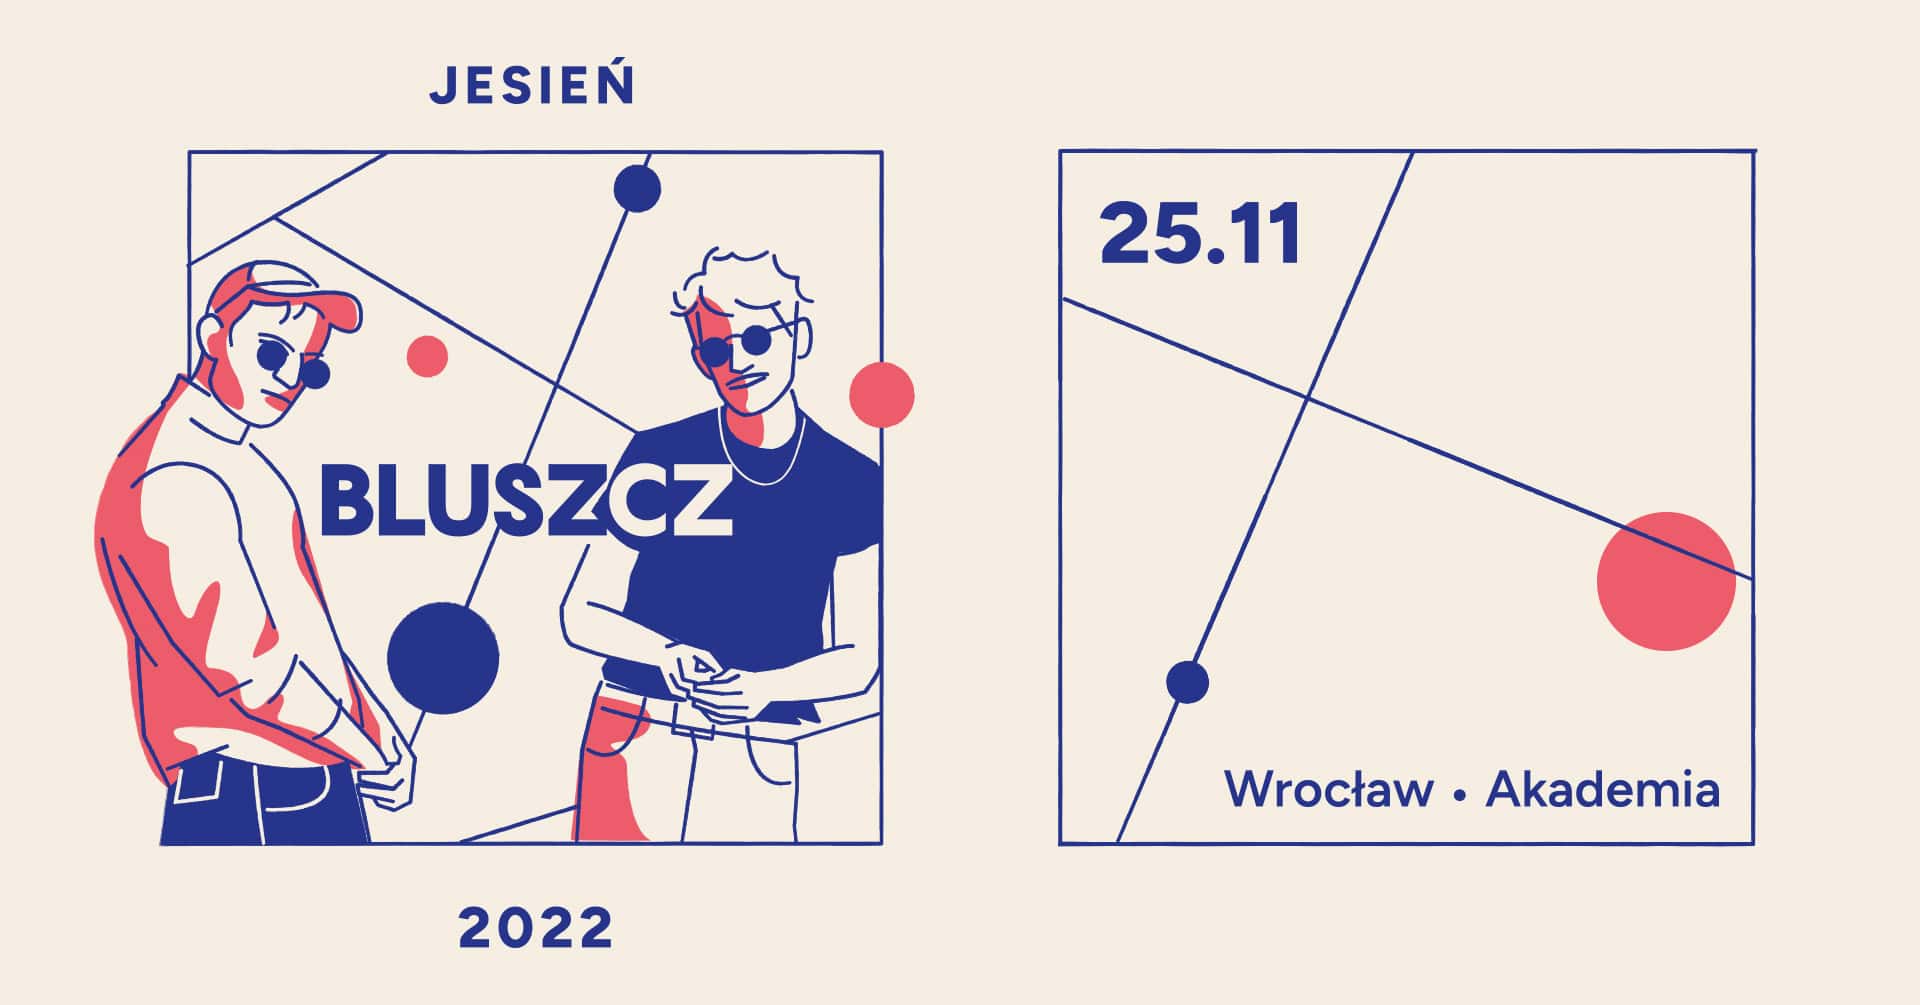 Bluszcz – Nowy Pop / Wrocław | Akademia / 25.11